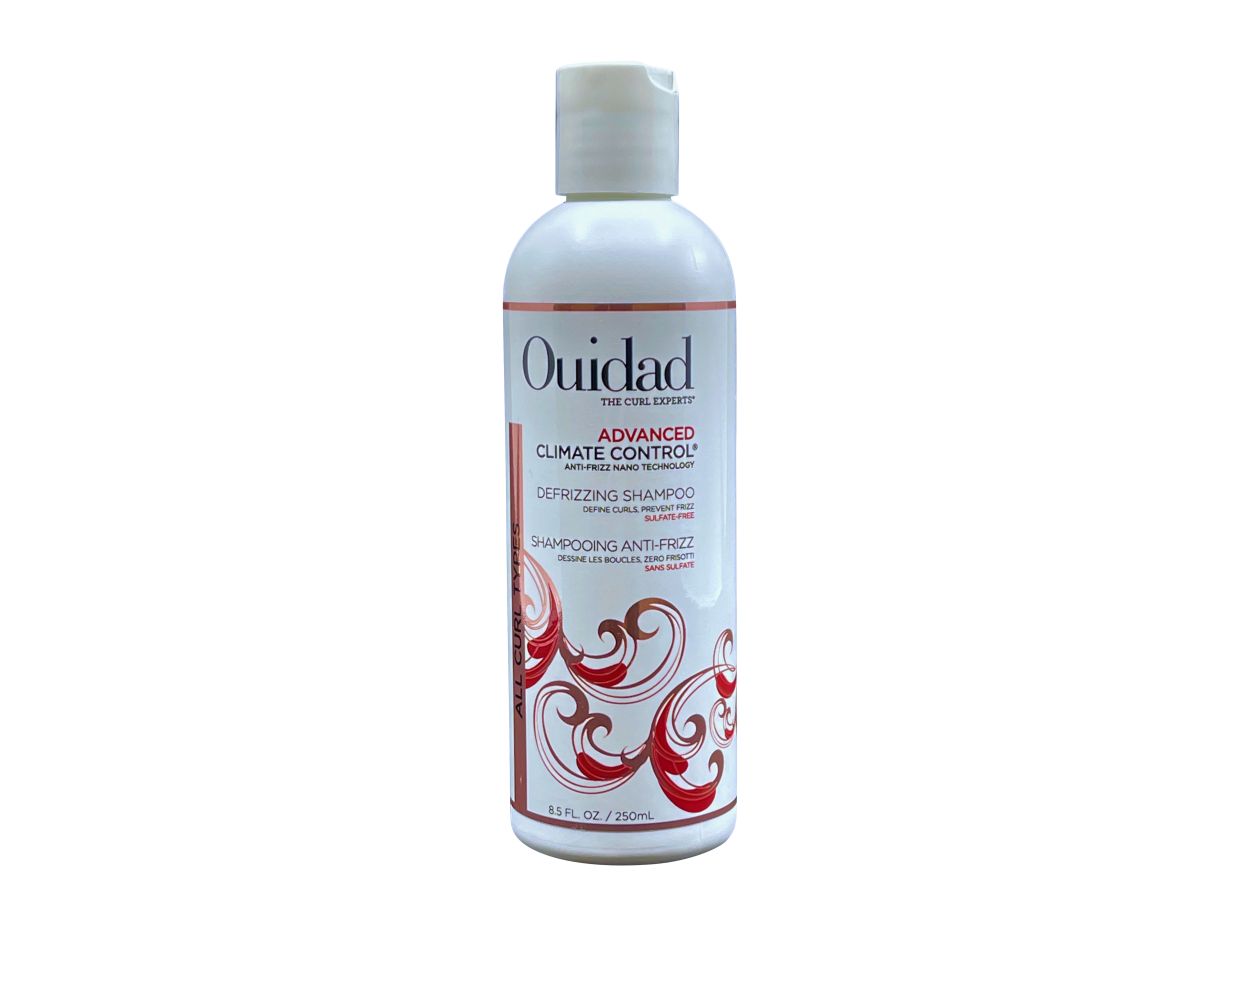 Ouidad Advanced Climate Defrizzing Shampoo Shampoo - Beautyvice.com